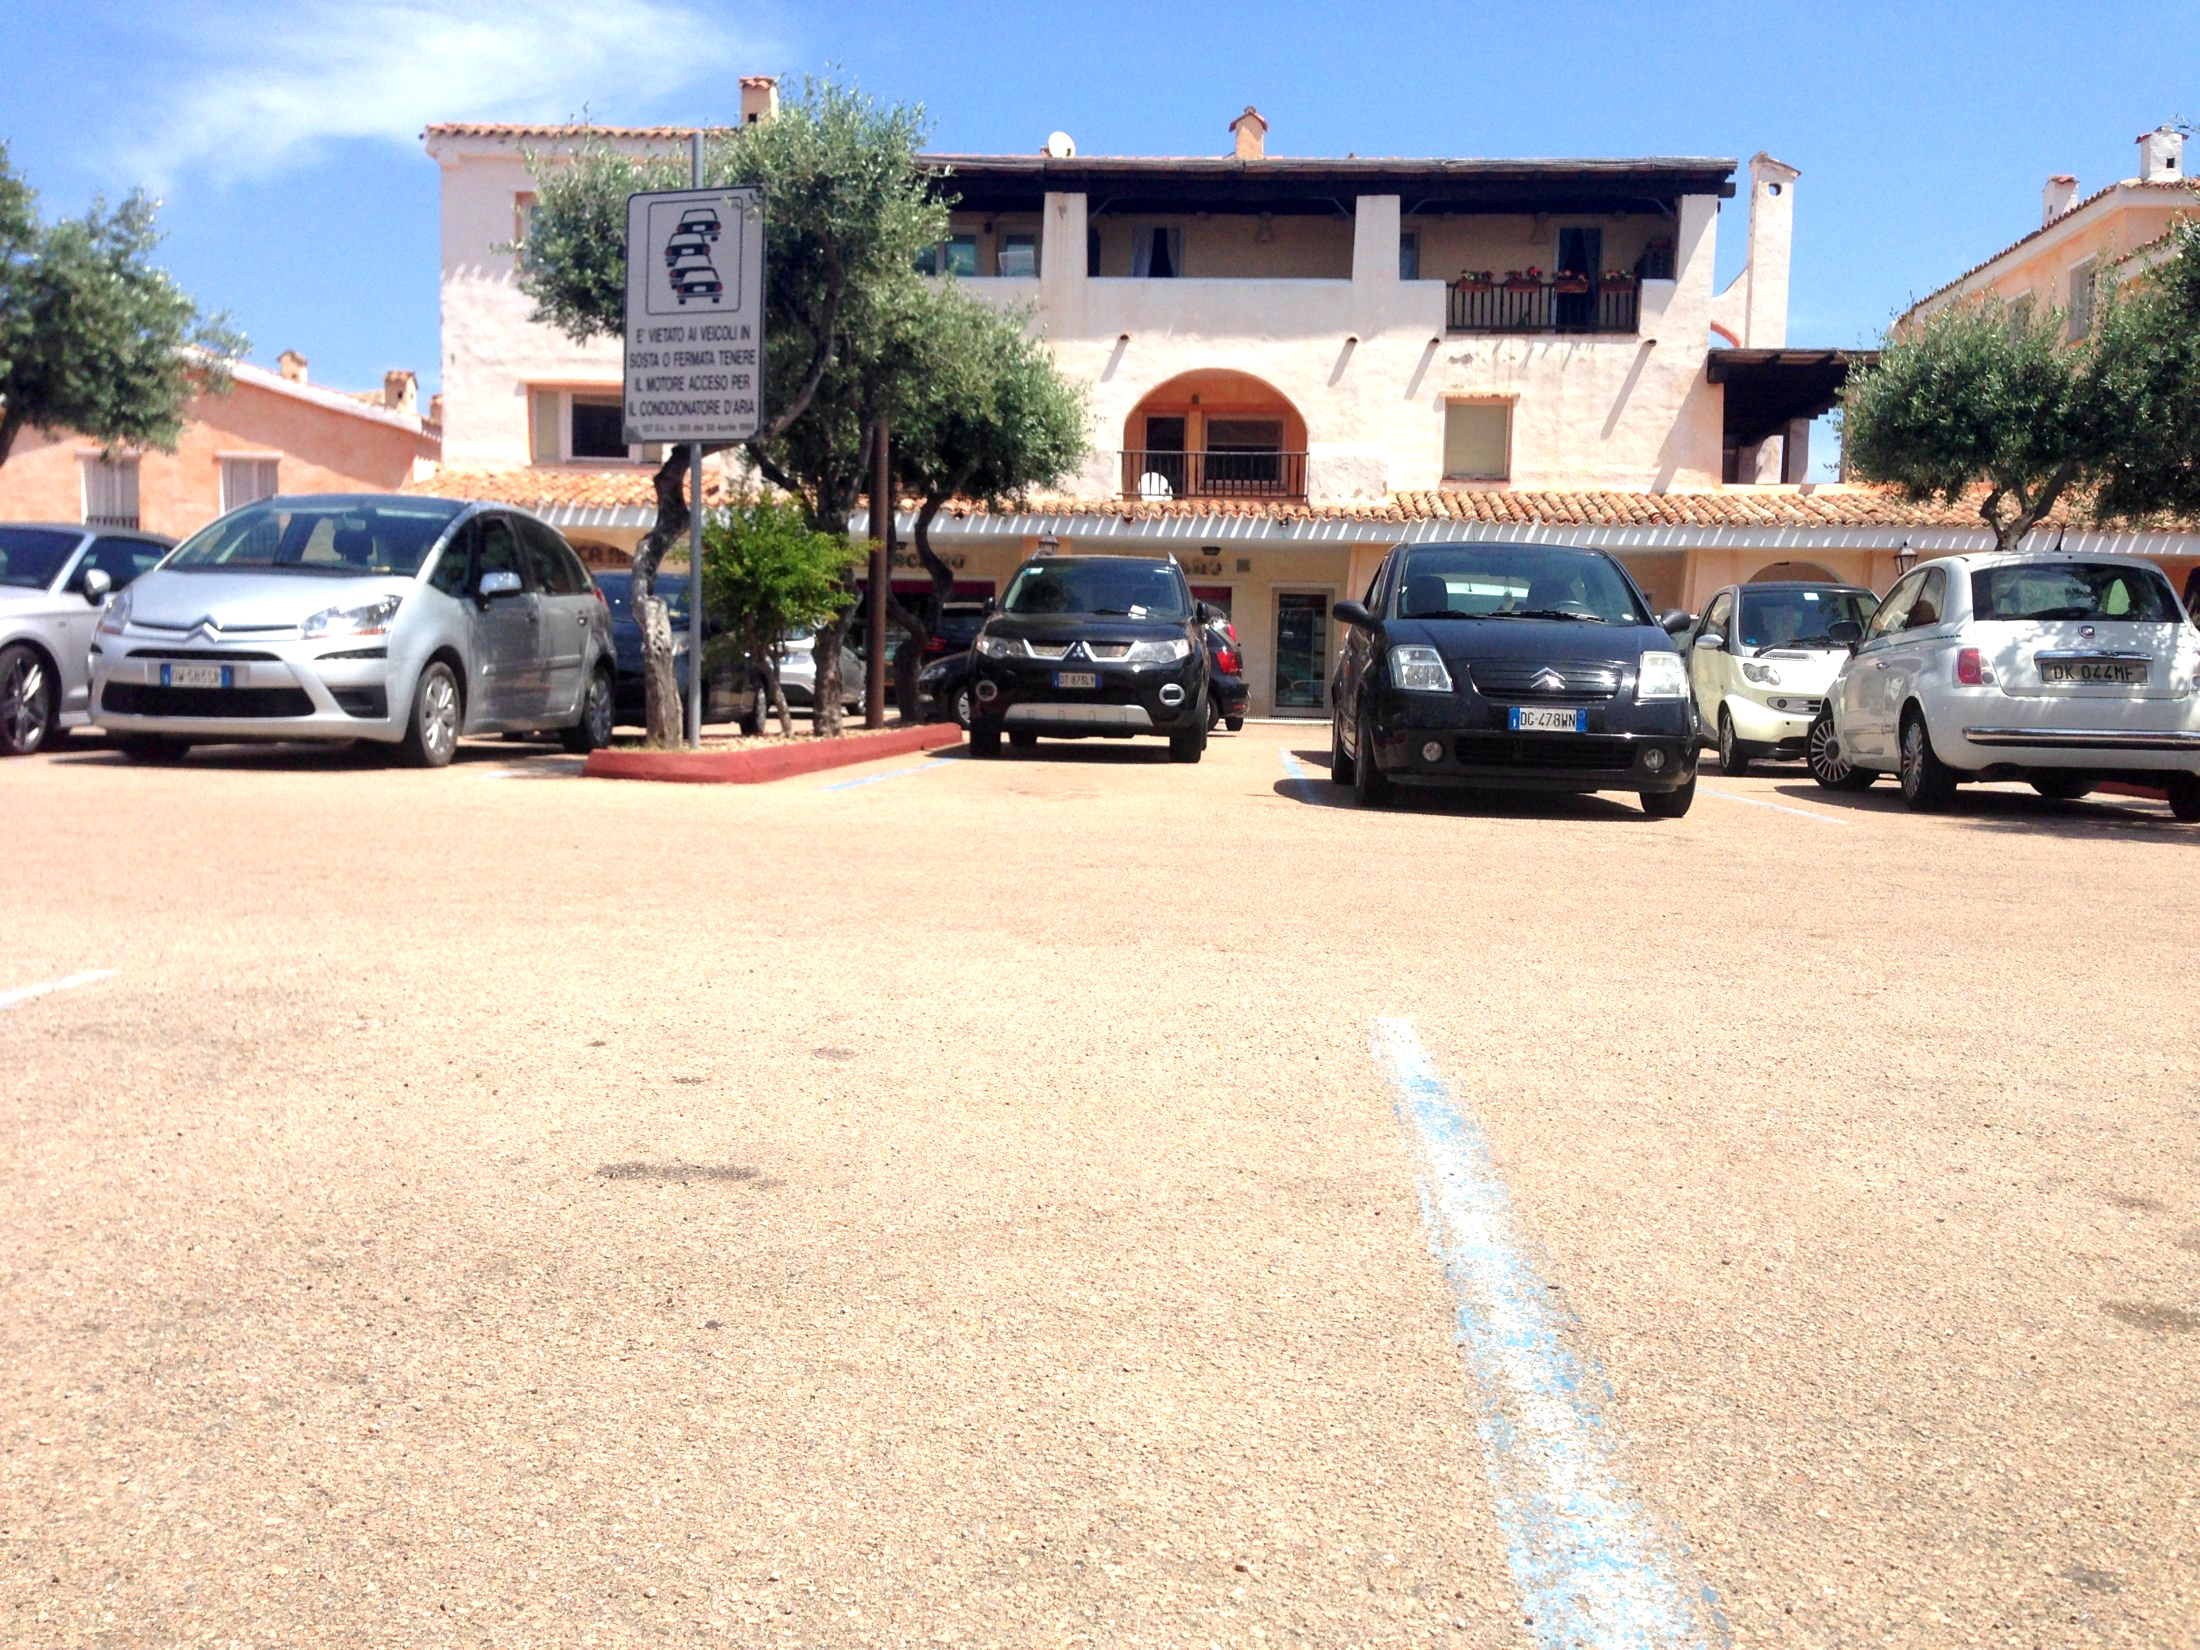 Parking piazzetta degli ulivi Porto Cervo